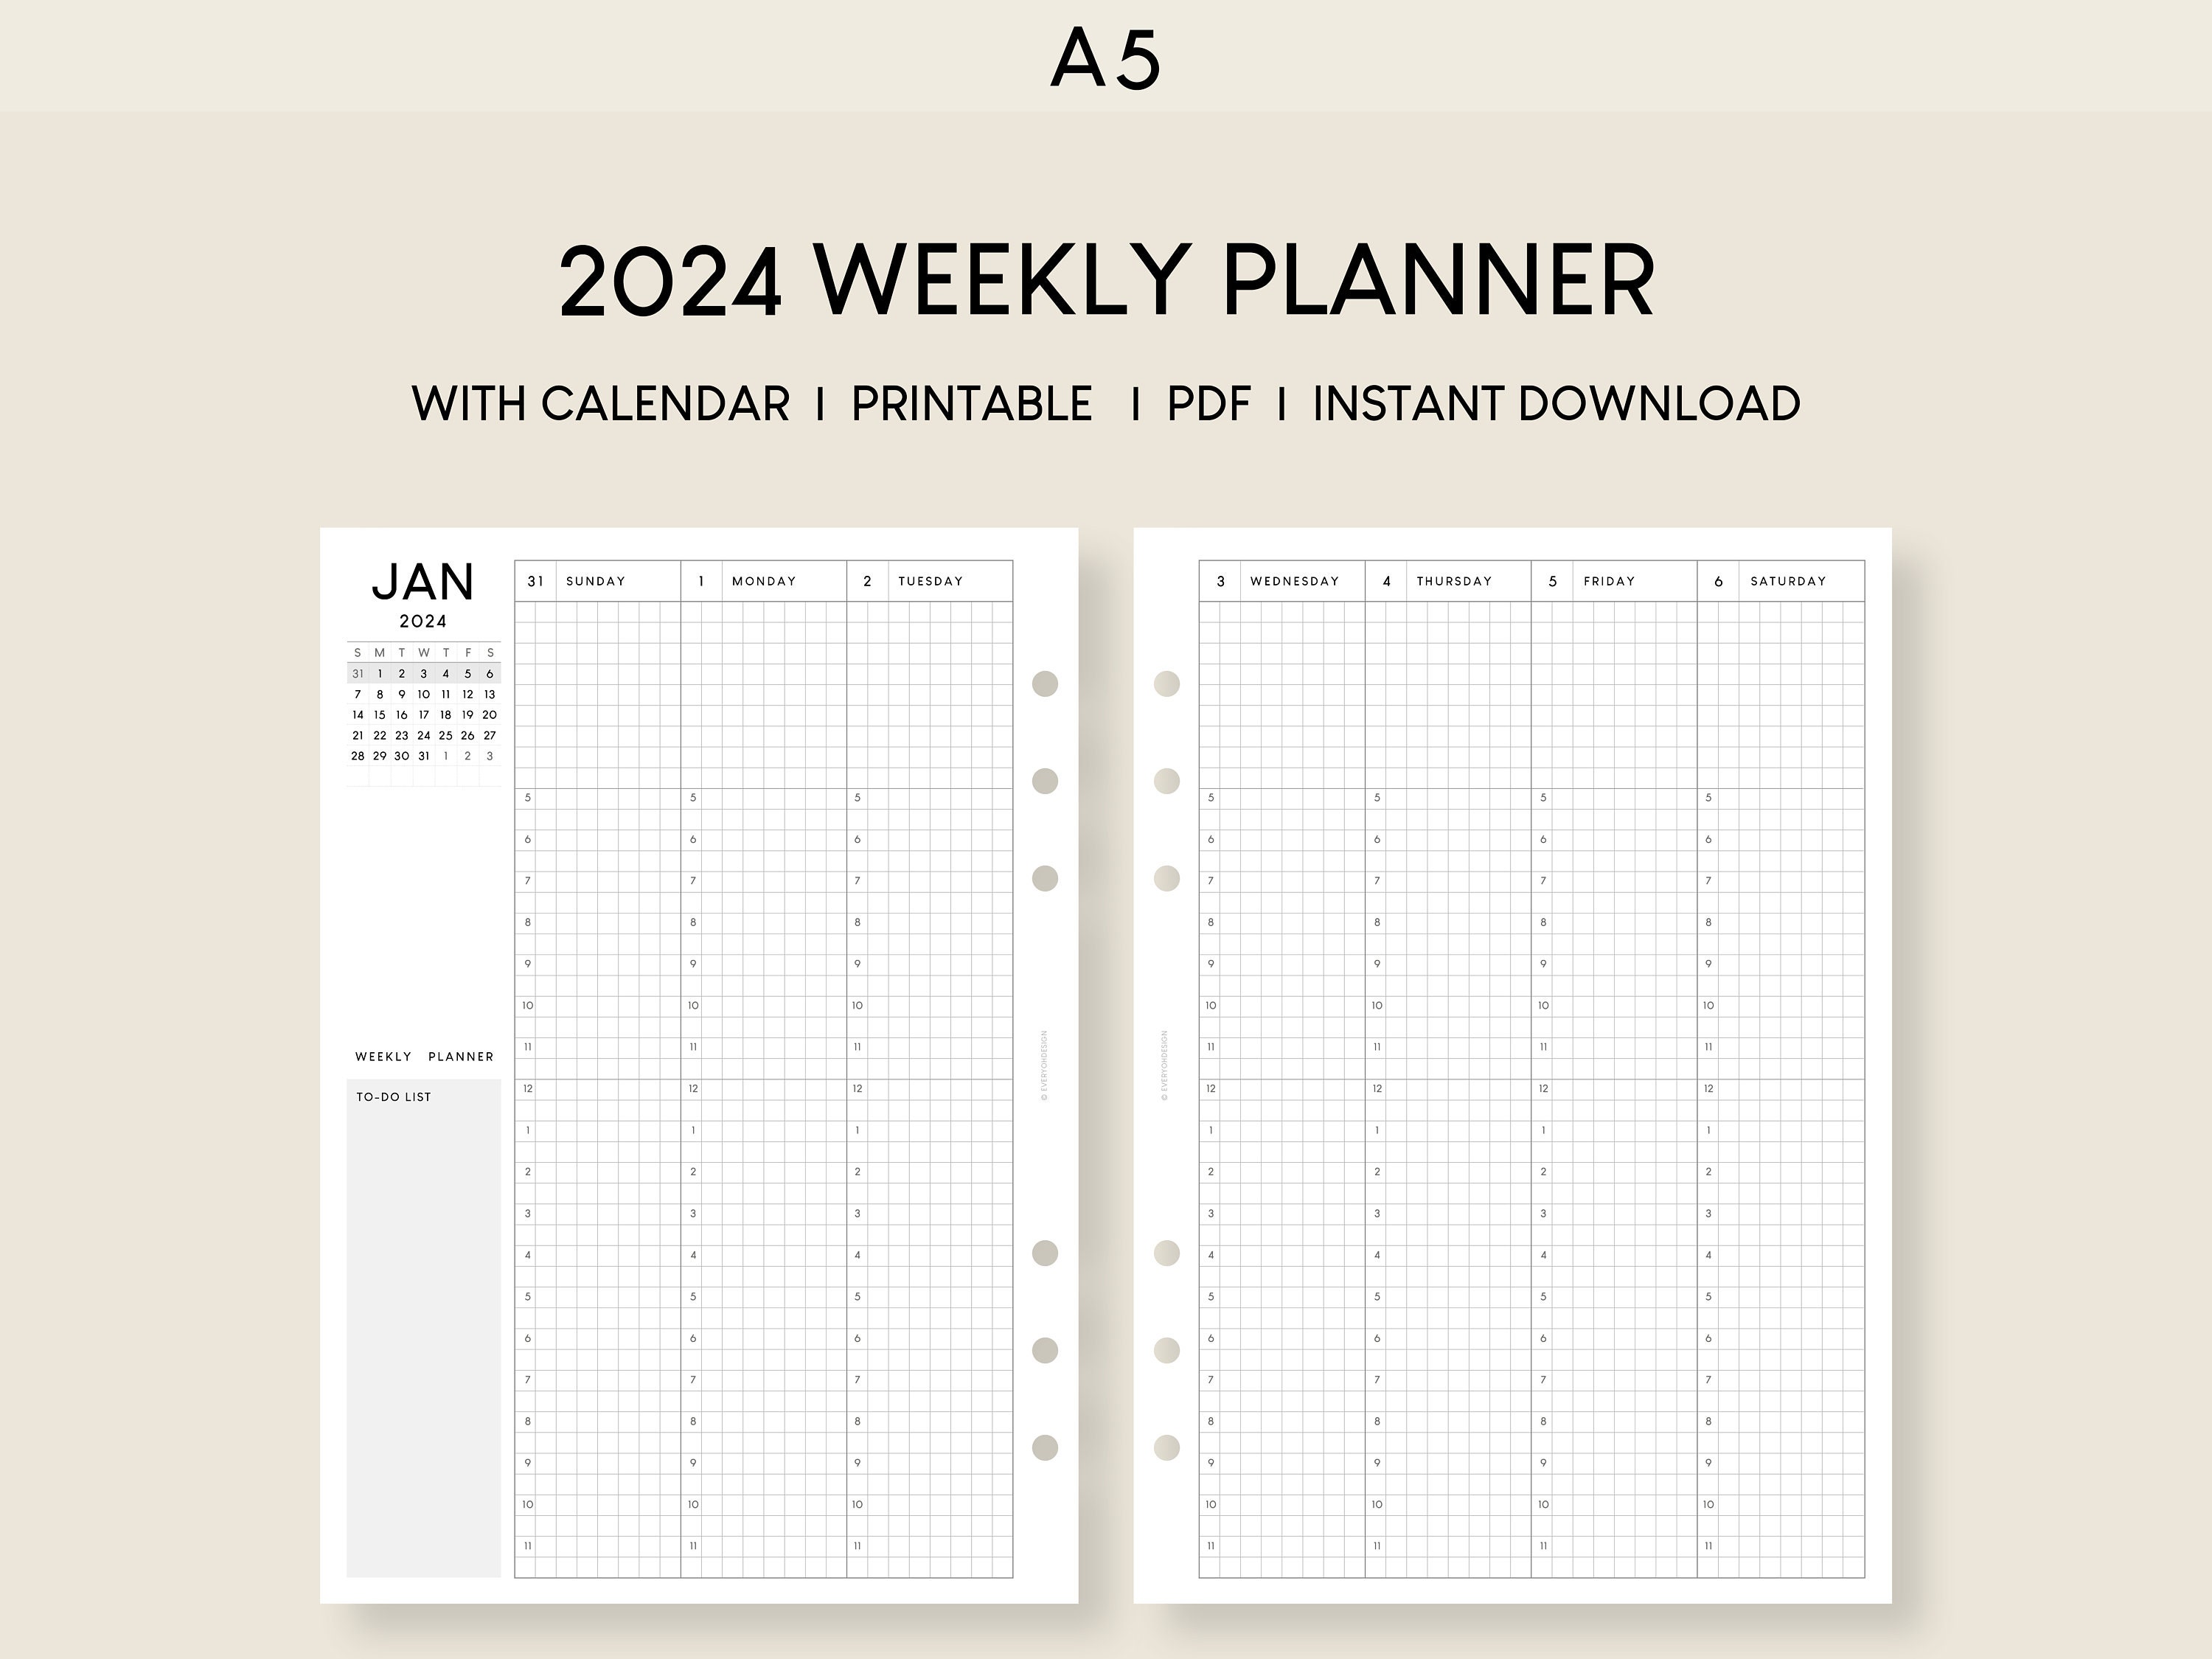 Agenda settimanale 2024 con inserti stampabili di calendario